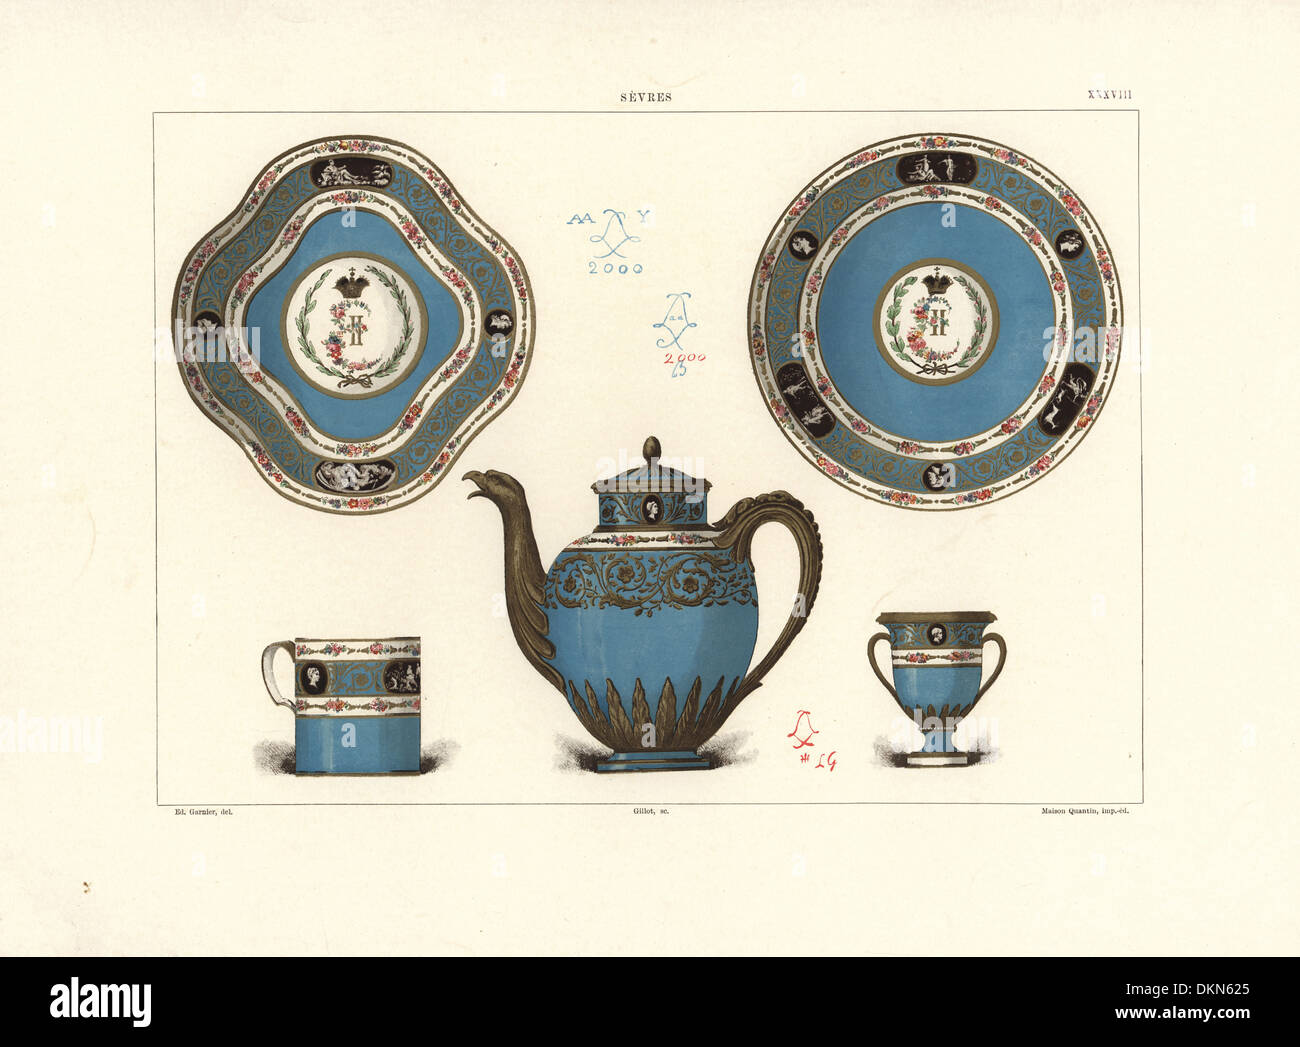 Sevres Porzellan-Service für die Kaiserin von Russland, 1778 gemacht. Stockfoto